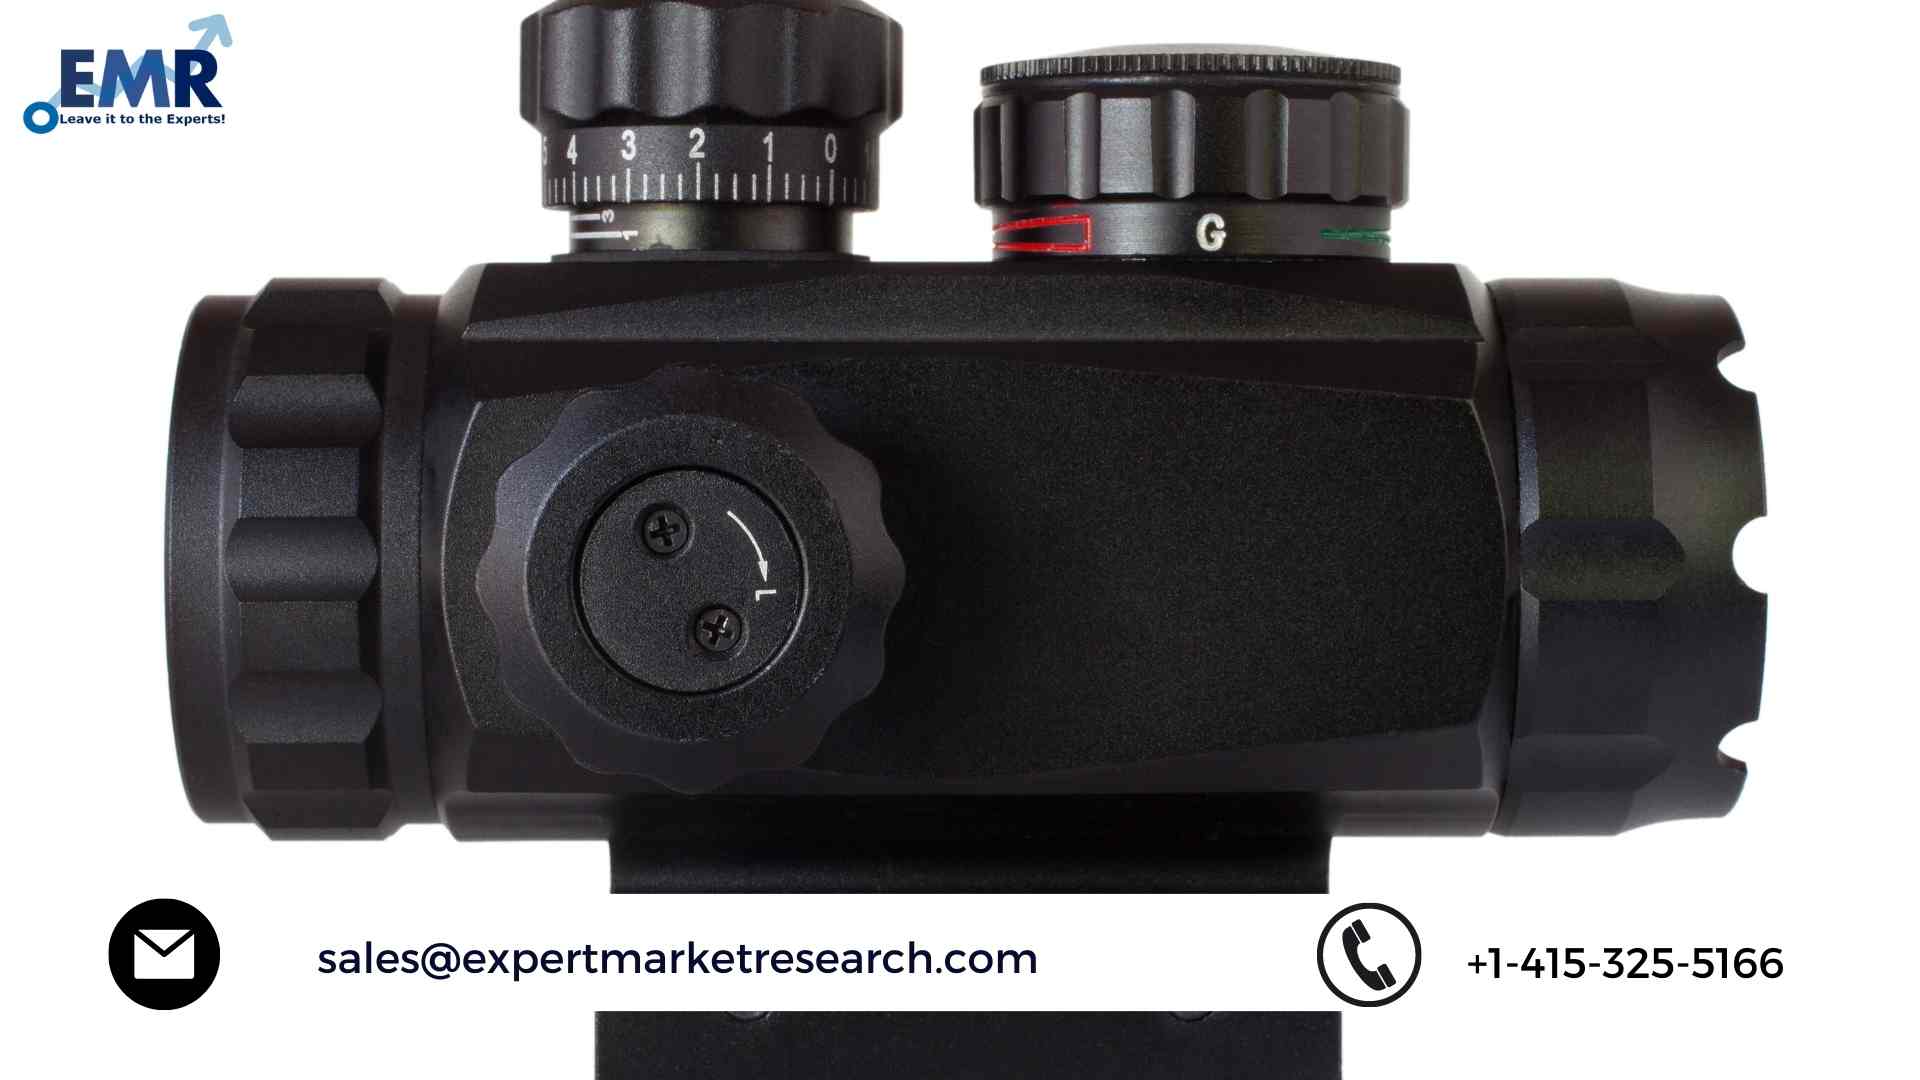 Riflescopes Market Share